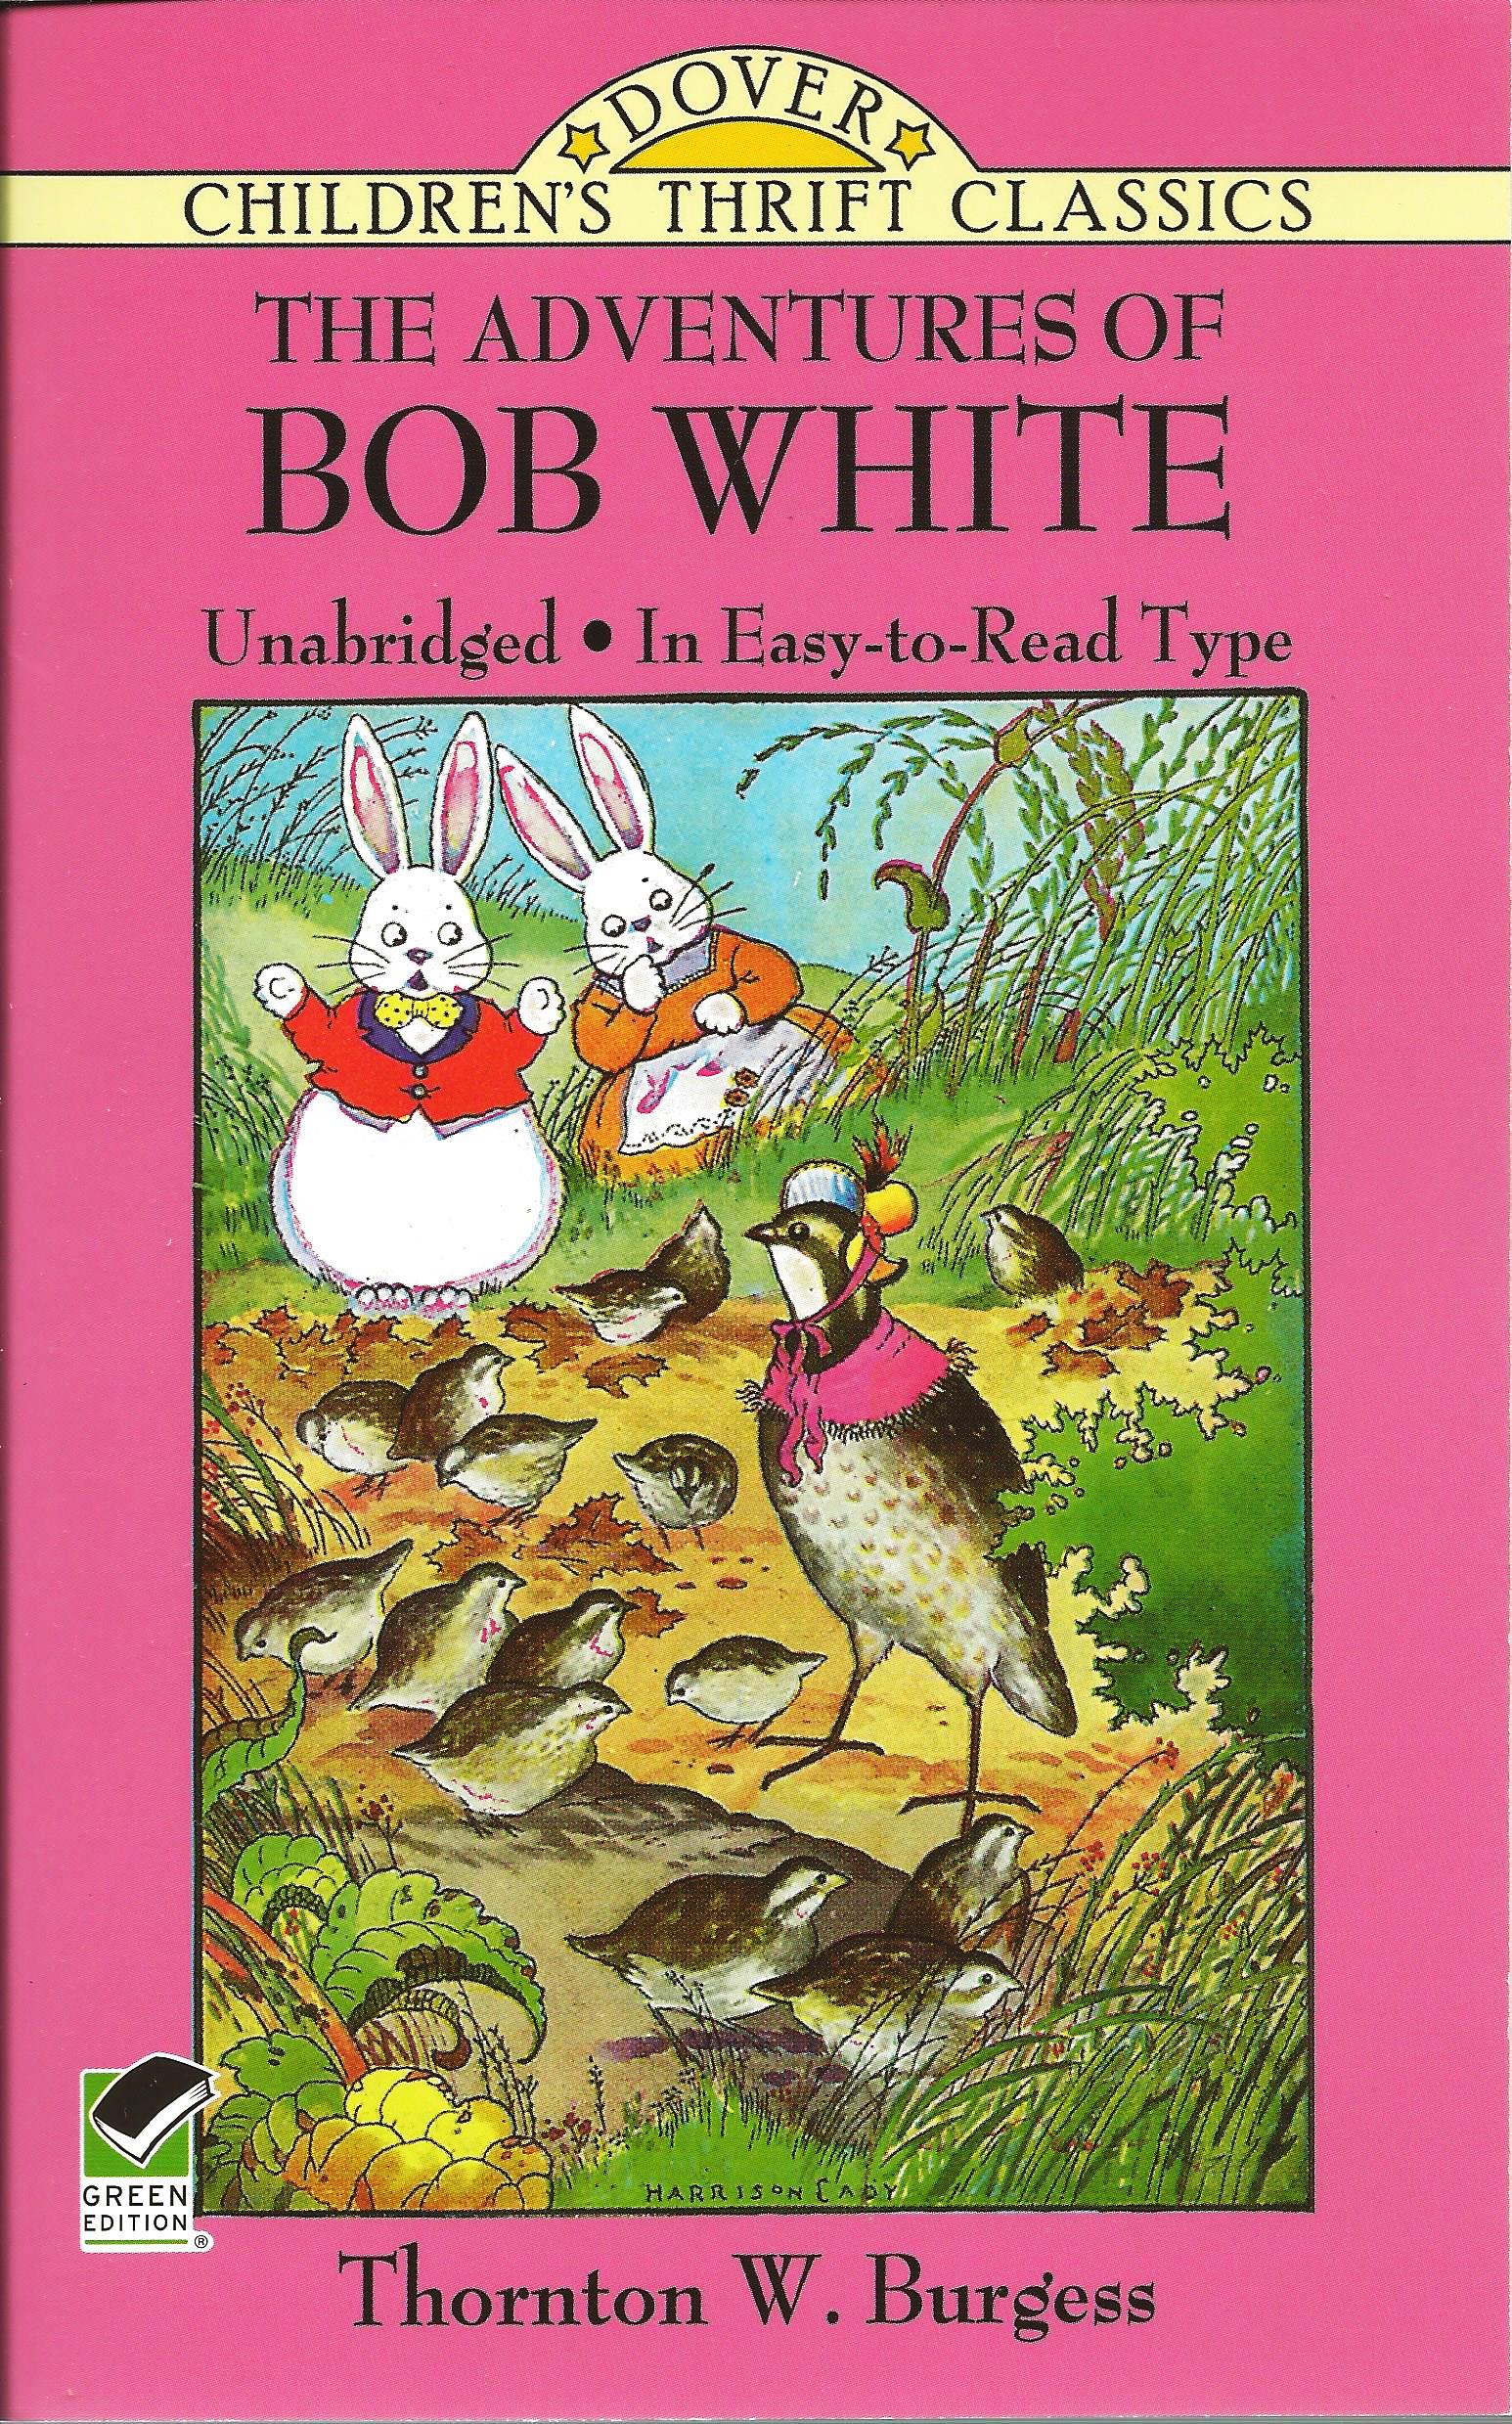 THE ADVENTURES OF BOB WHITE Thornton W. Burgess